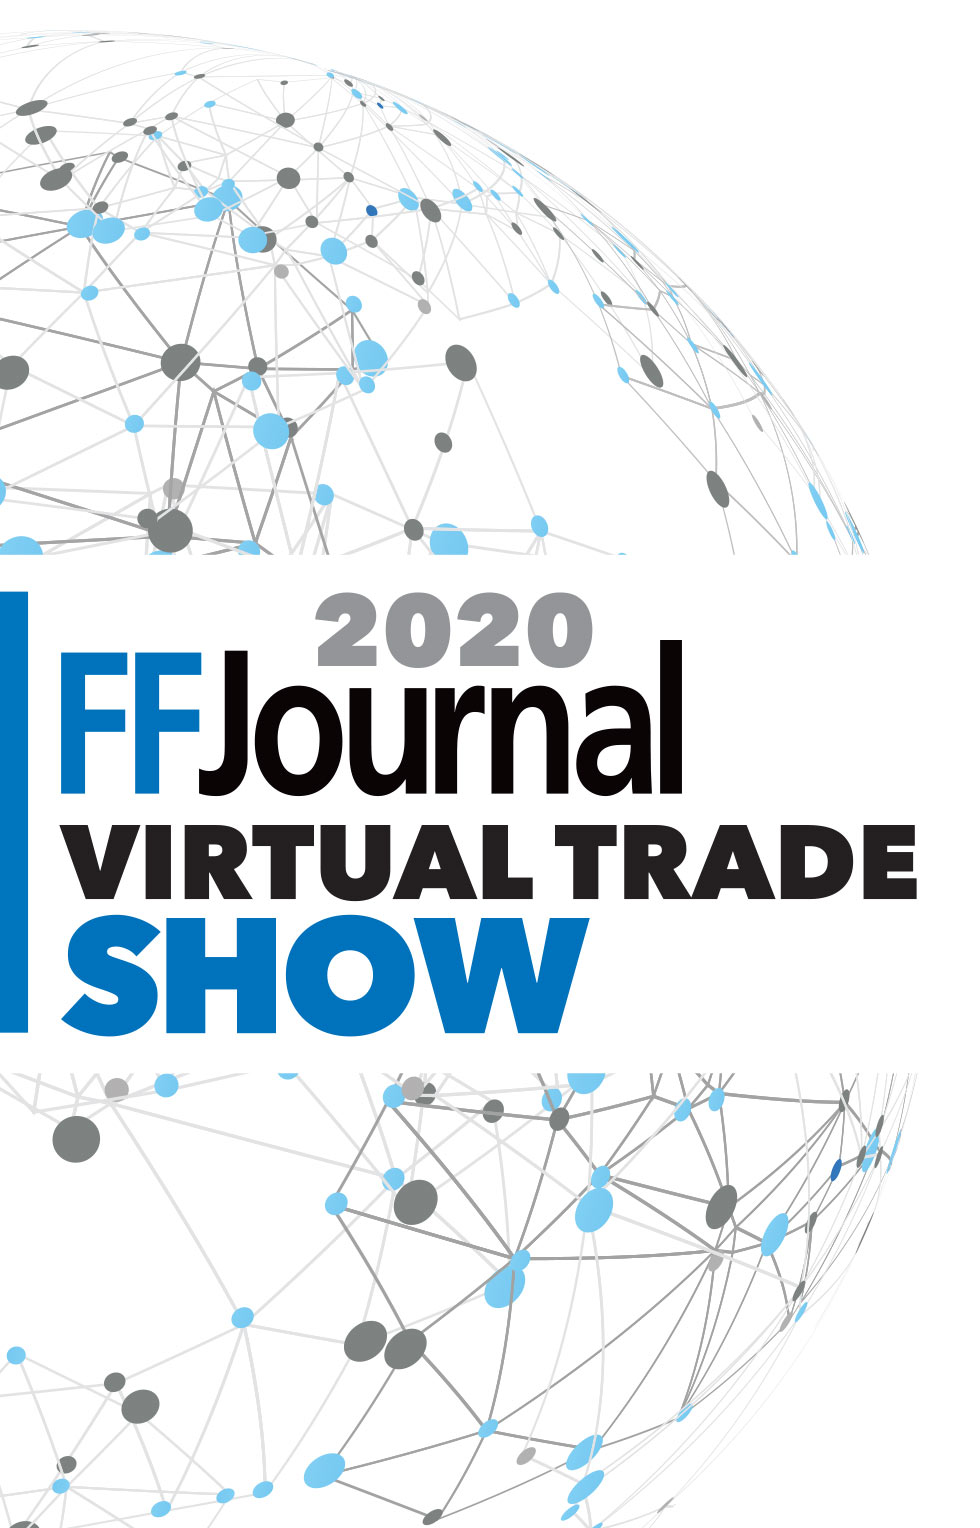 2020 FFJournal Virtual Trade Show graphic